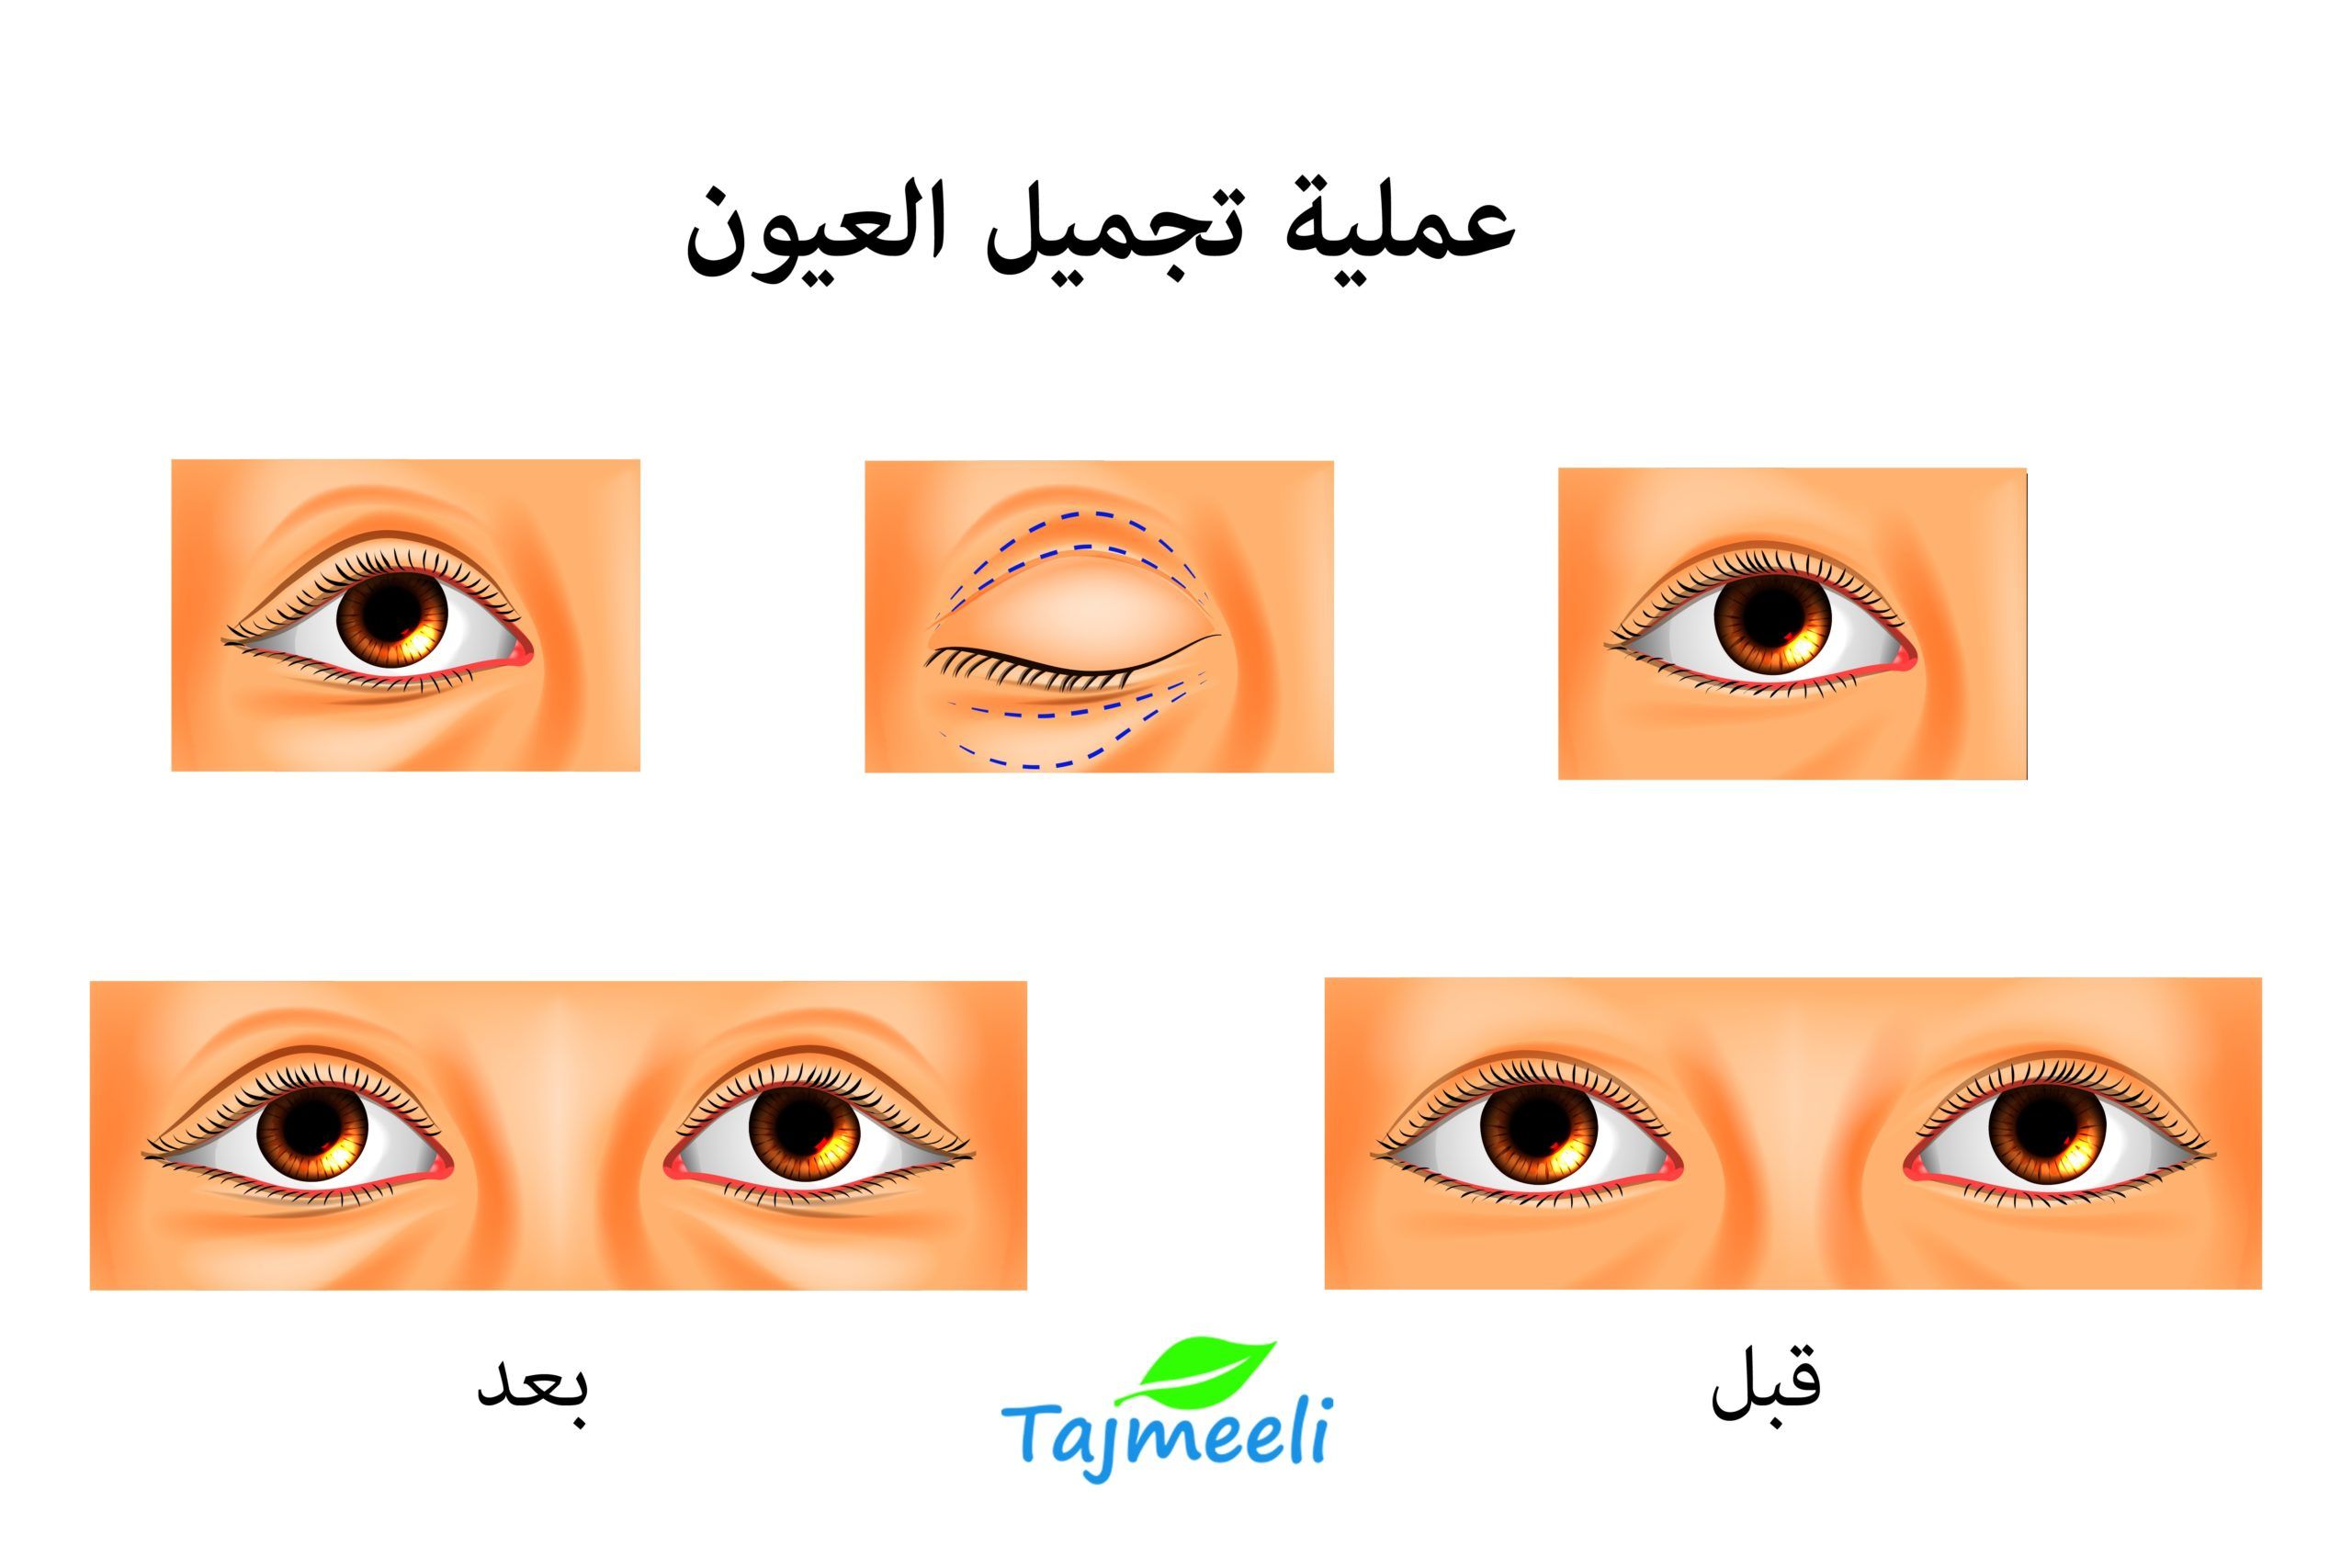 ما هي عملية تكبير وتوسيع العيون؟